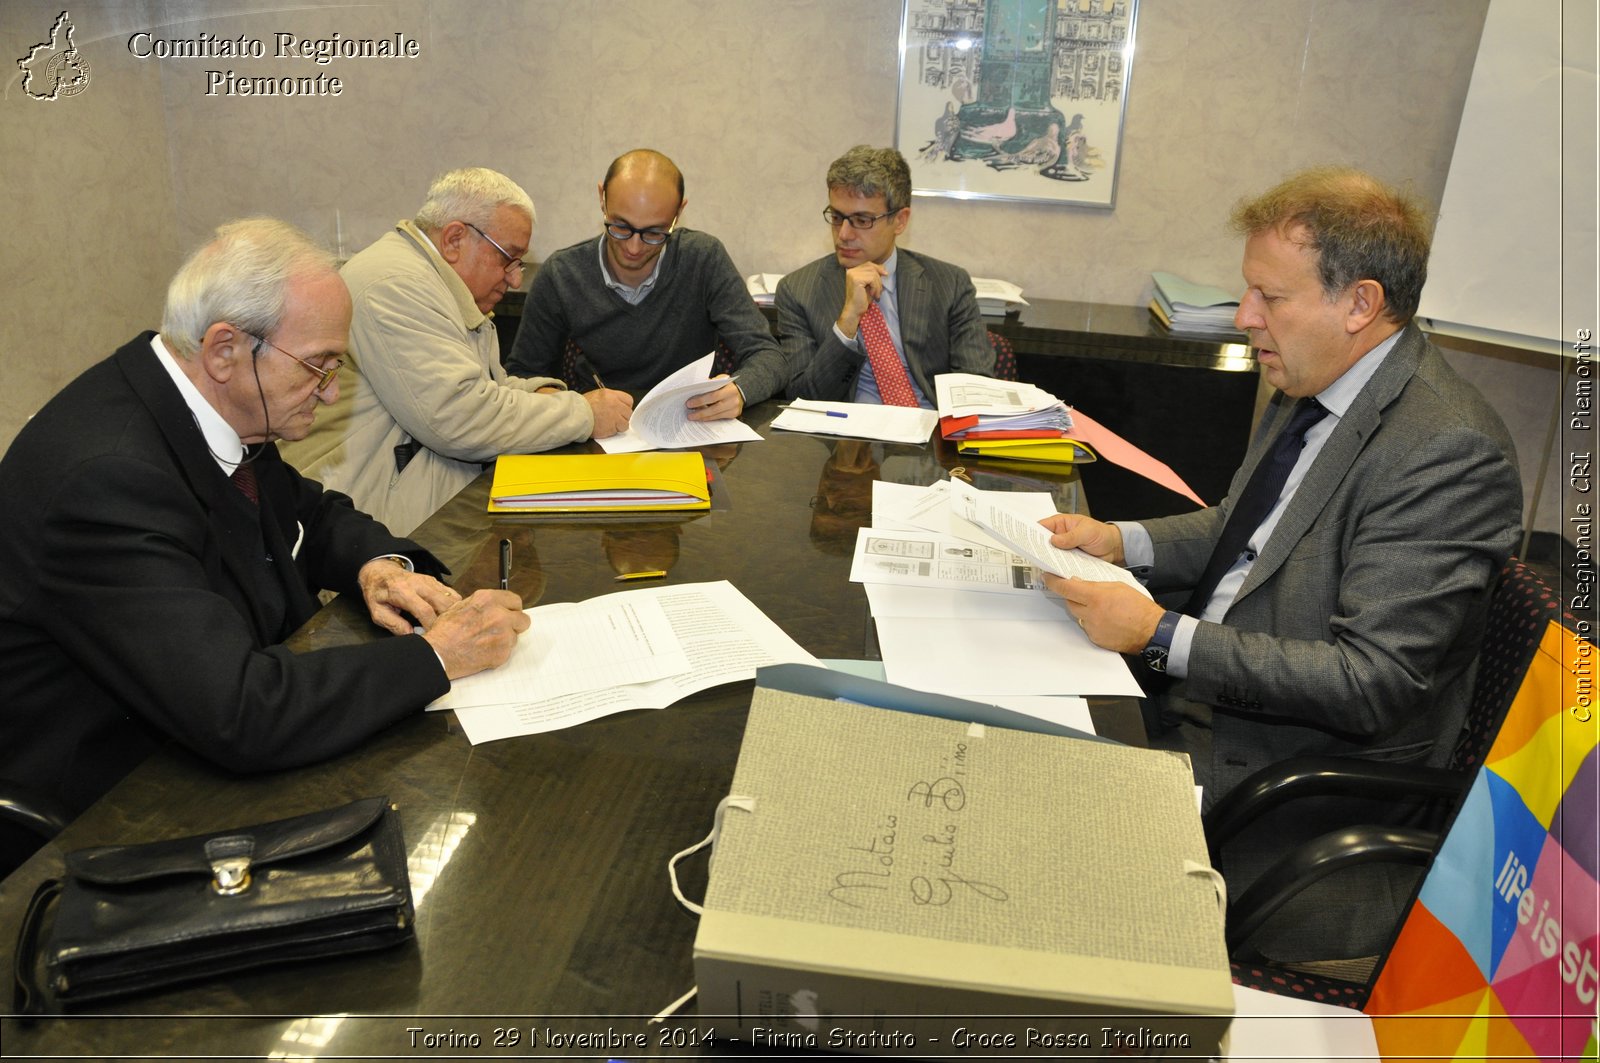 Torino 29 Novembre 2014 - Firma Statuto - Croce Rossa Italiana- Comitato Regionale del Piemonte